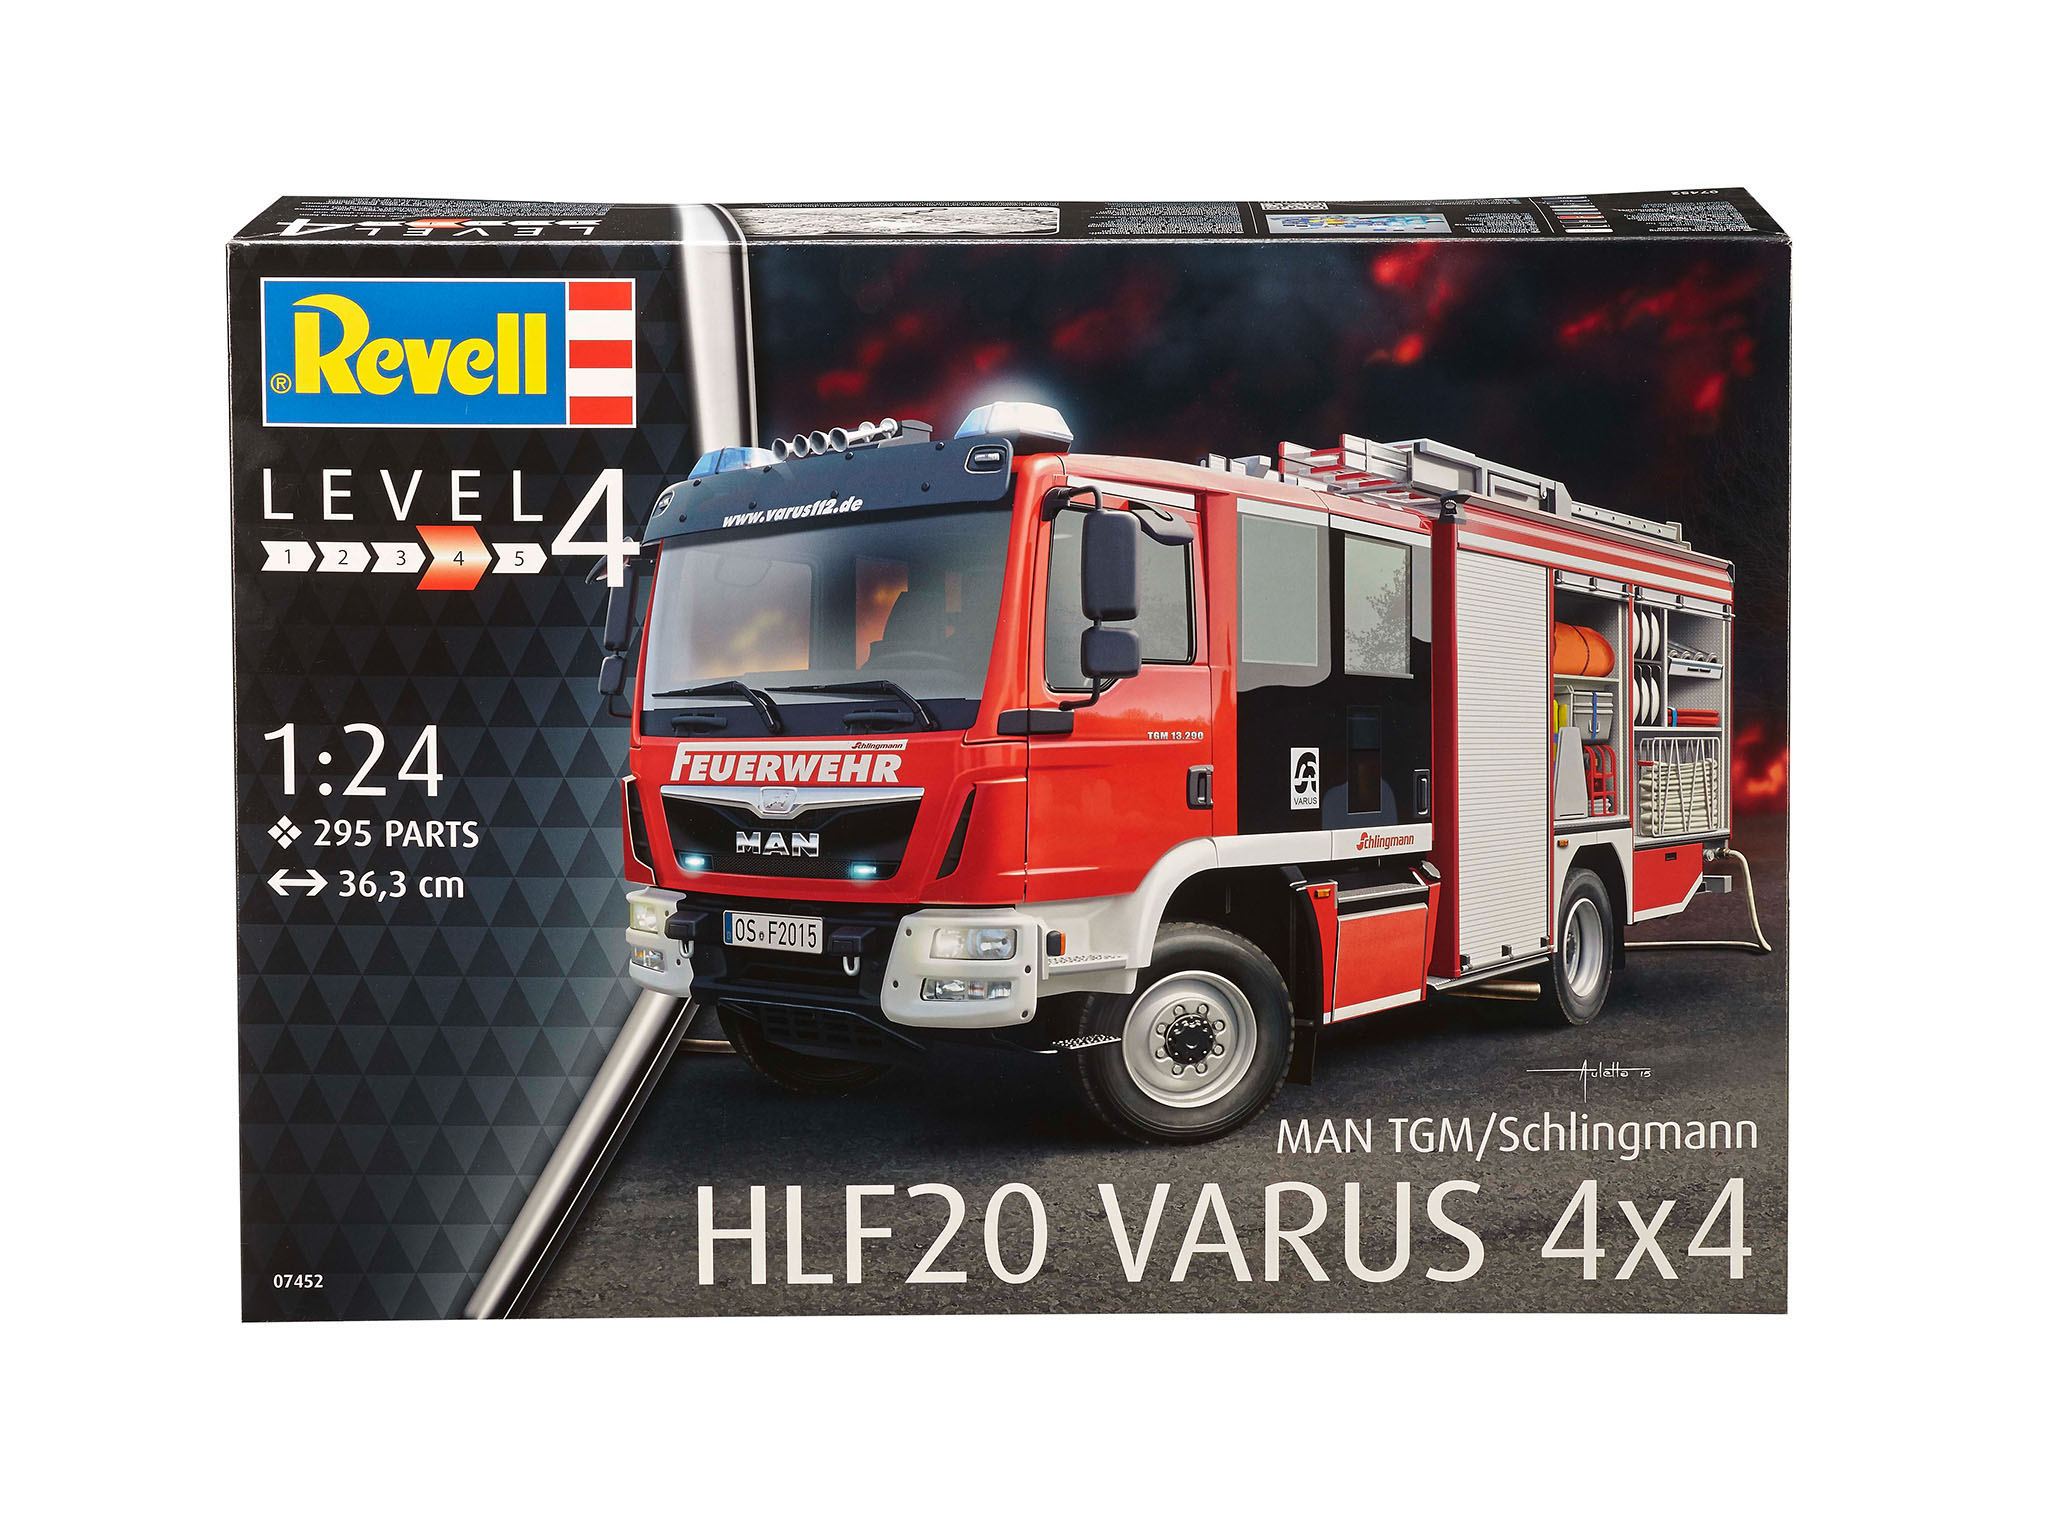 REVELL Mehrfarbig 20 Varus 07452 Bausatz, 4x4 MAN/Schlingmann HLF